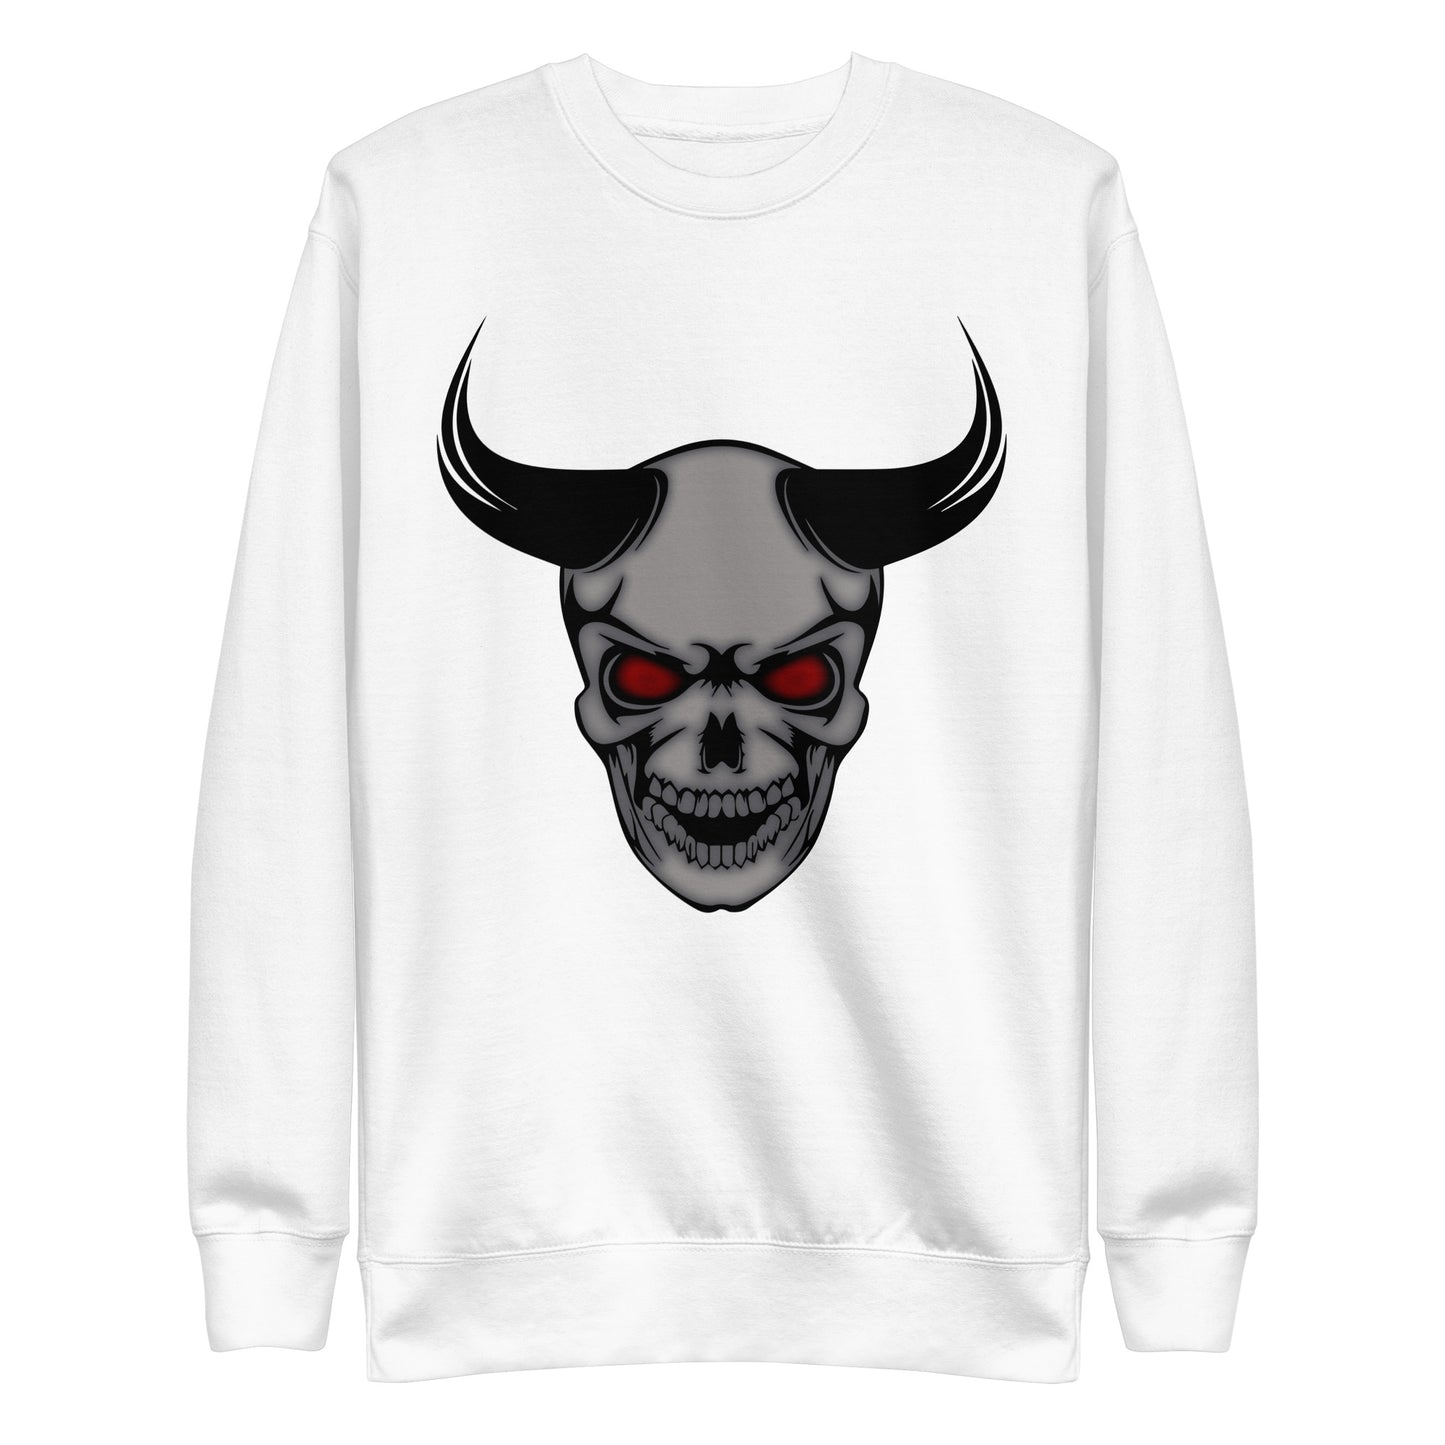 Devil’s Advocate - Unisex Premium Sweatshirt